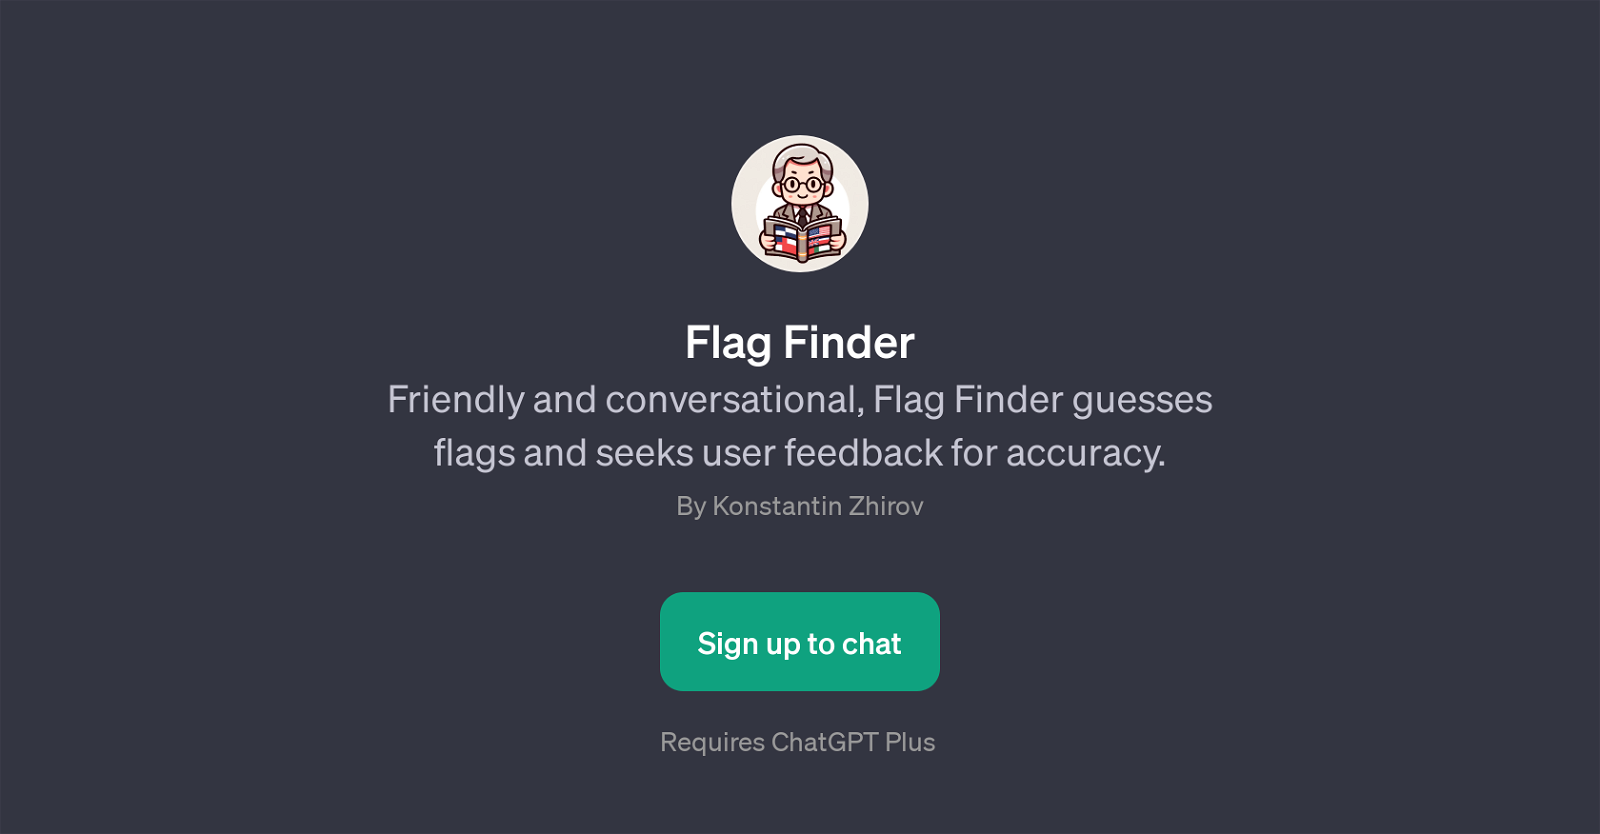 Flag Finder website